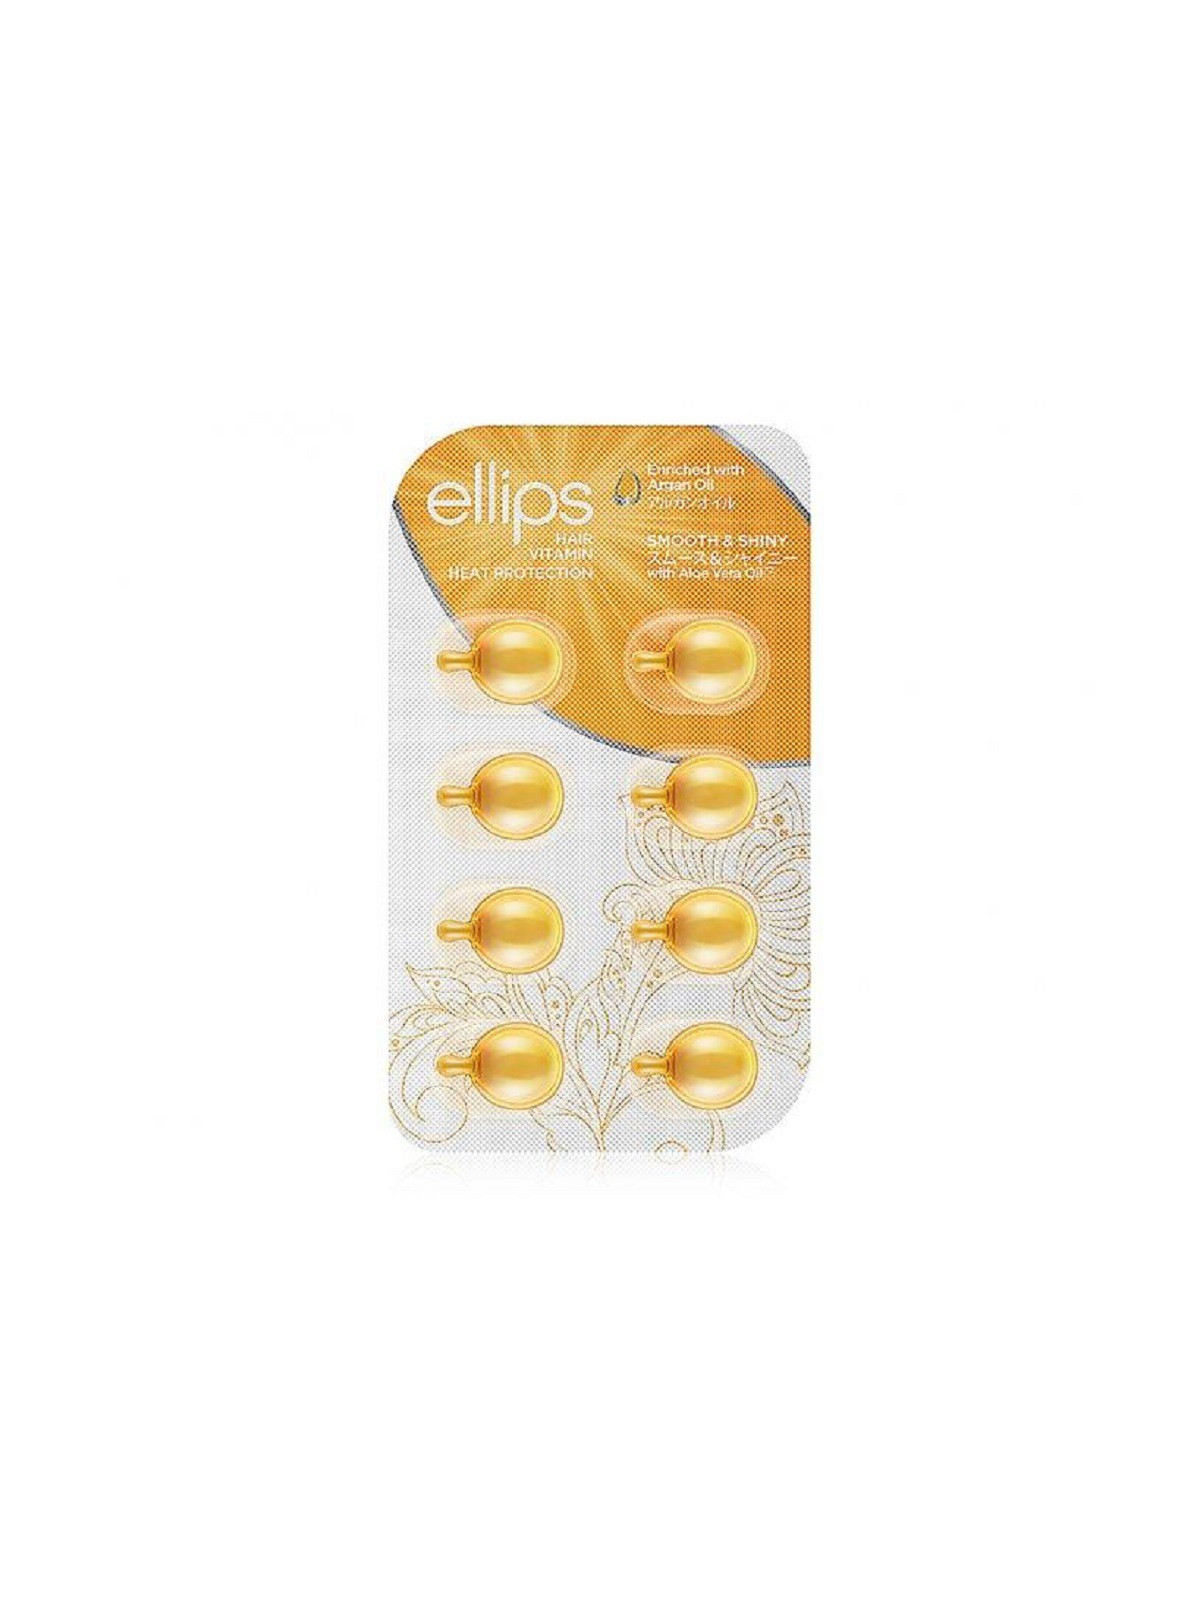 Tepami vitaminai plaukų apimties didinimui ELLIPS Smooth & Shiny  8x1ml